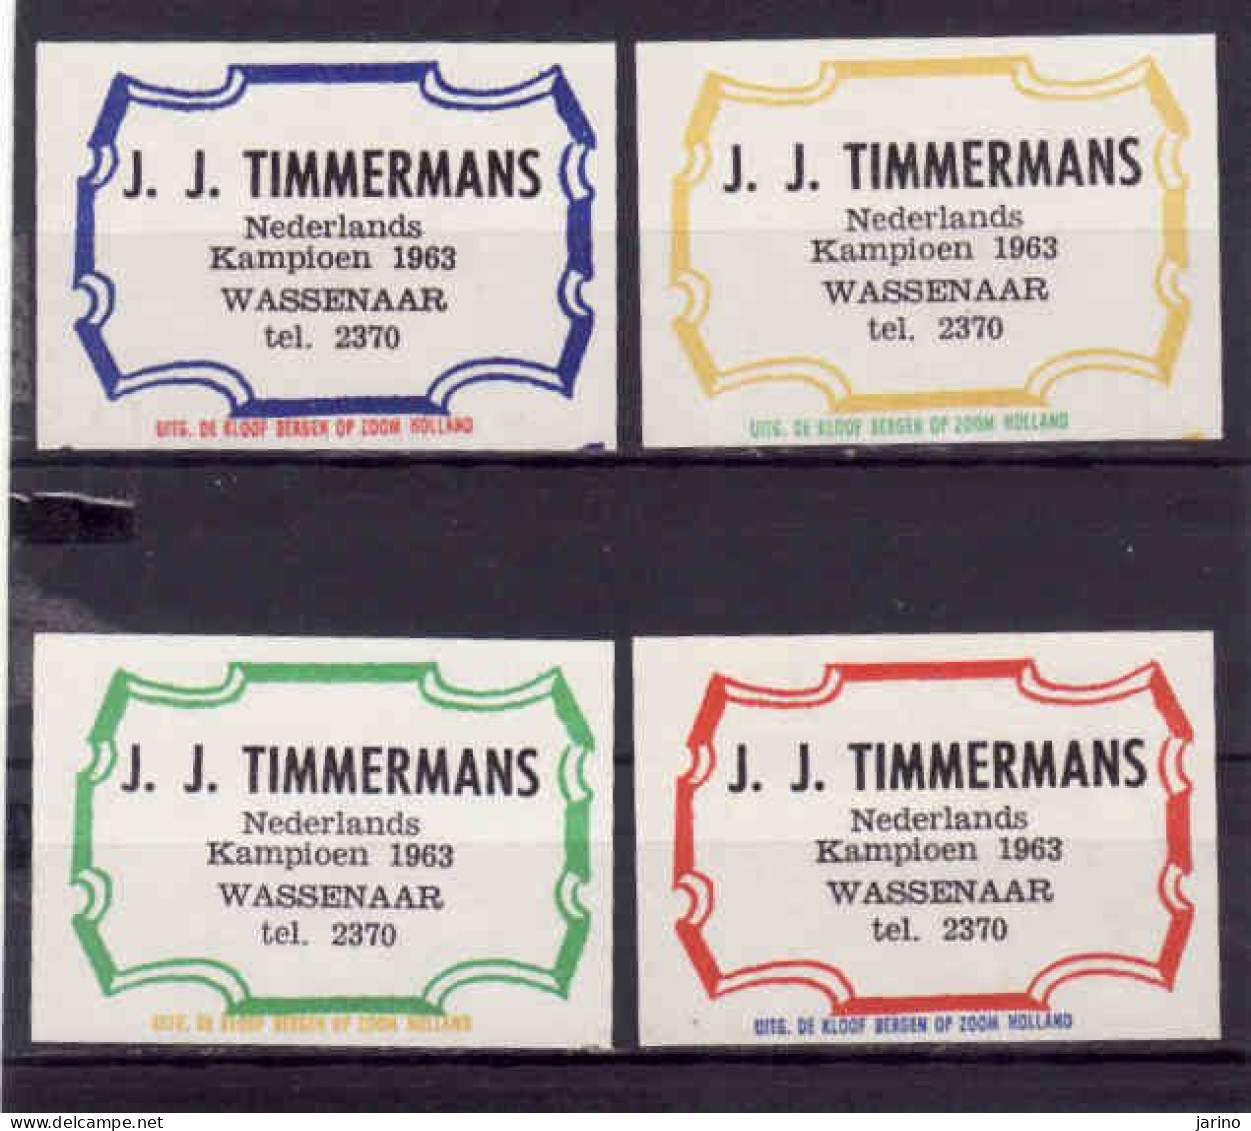 4 Dutch Matchbox Labels, Wassenaar - South Holland, J. J. Timmermans, Holland, Netherlands - Matchbox Labels